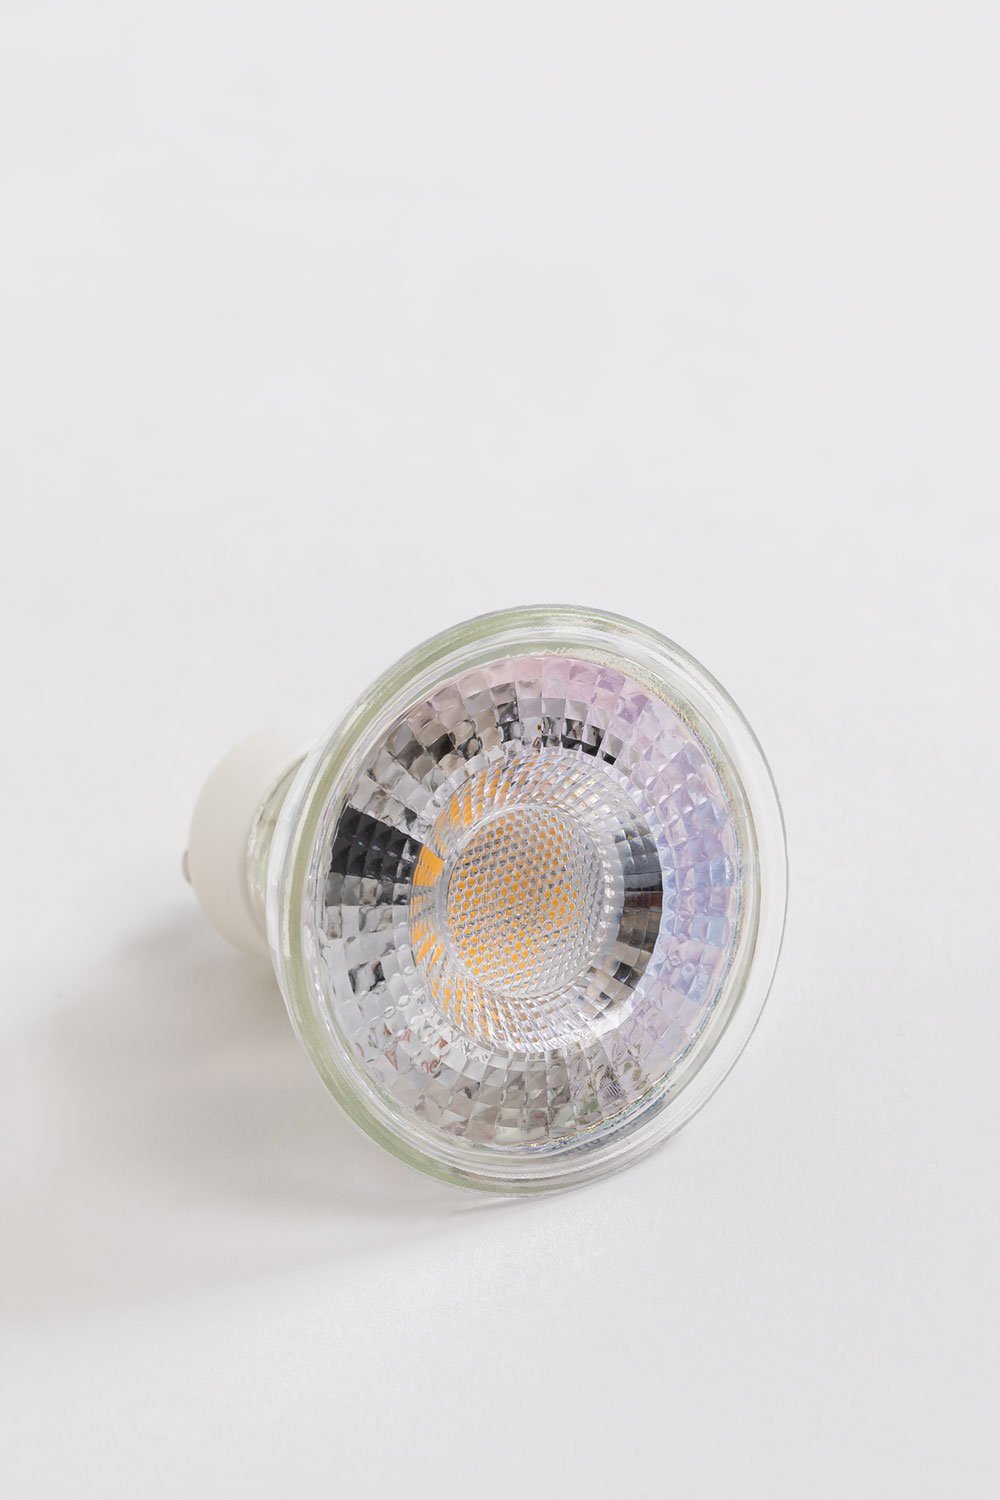 GU10 5W LED Bulb Datia, gallery image 1